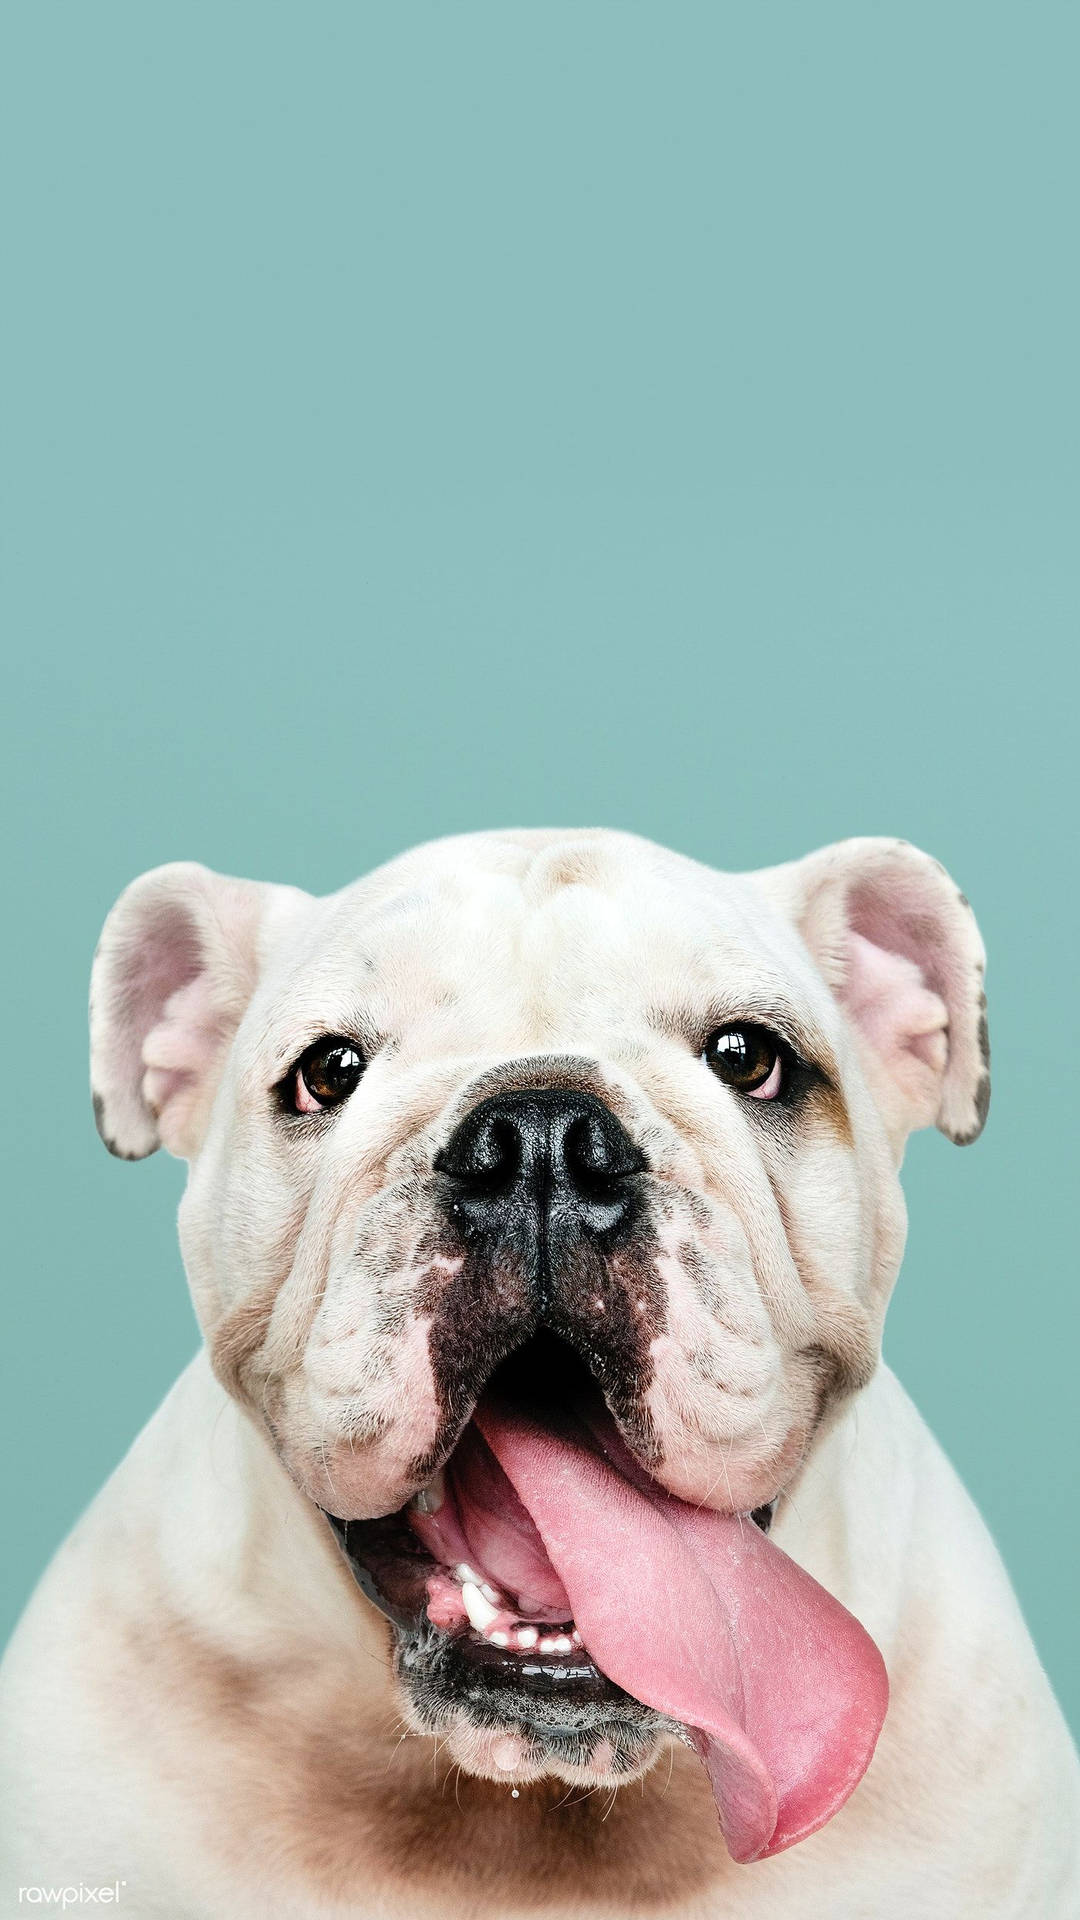 Tongue Out English Bulldog Wallpaper